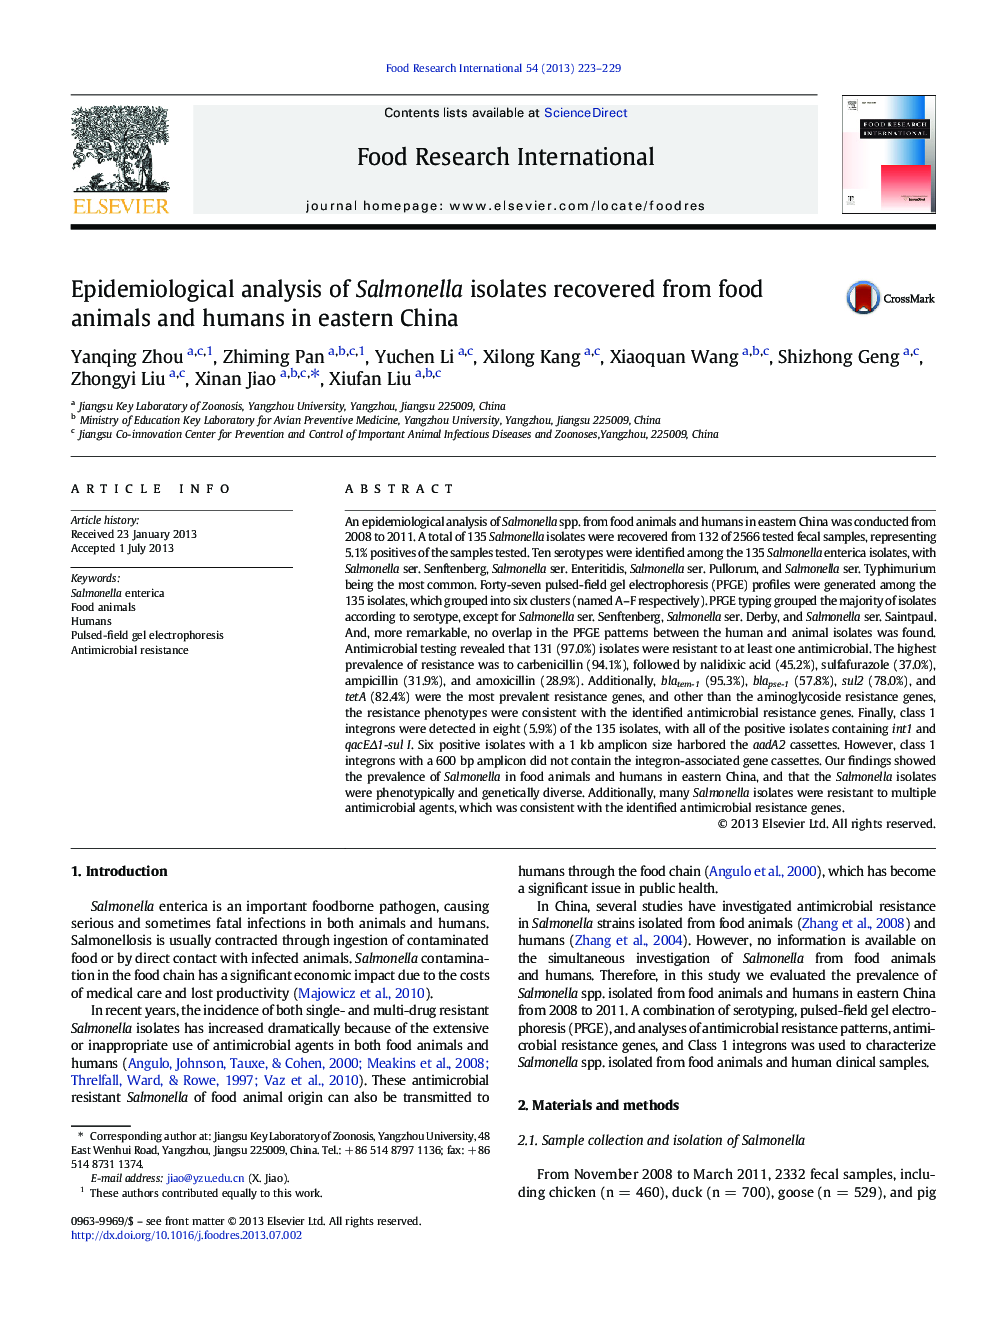 تجزیه و تحلیل اپیدمیولوژیک جدایی های سالمونلا از حیوانات و انسان های مواد غذایی در شرق چین است 